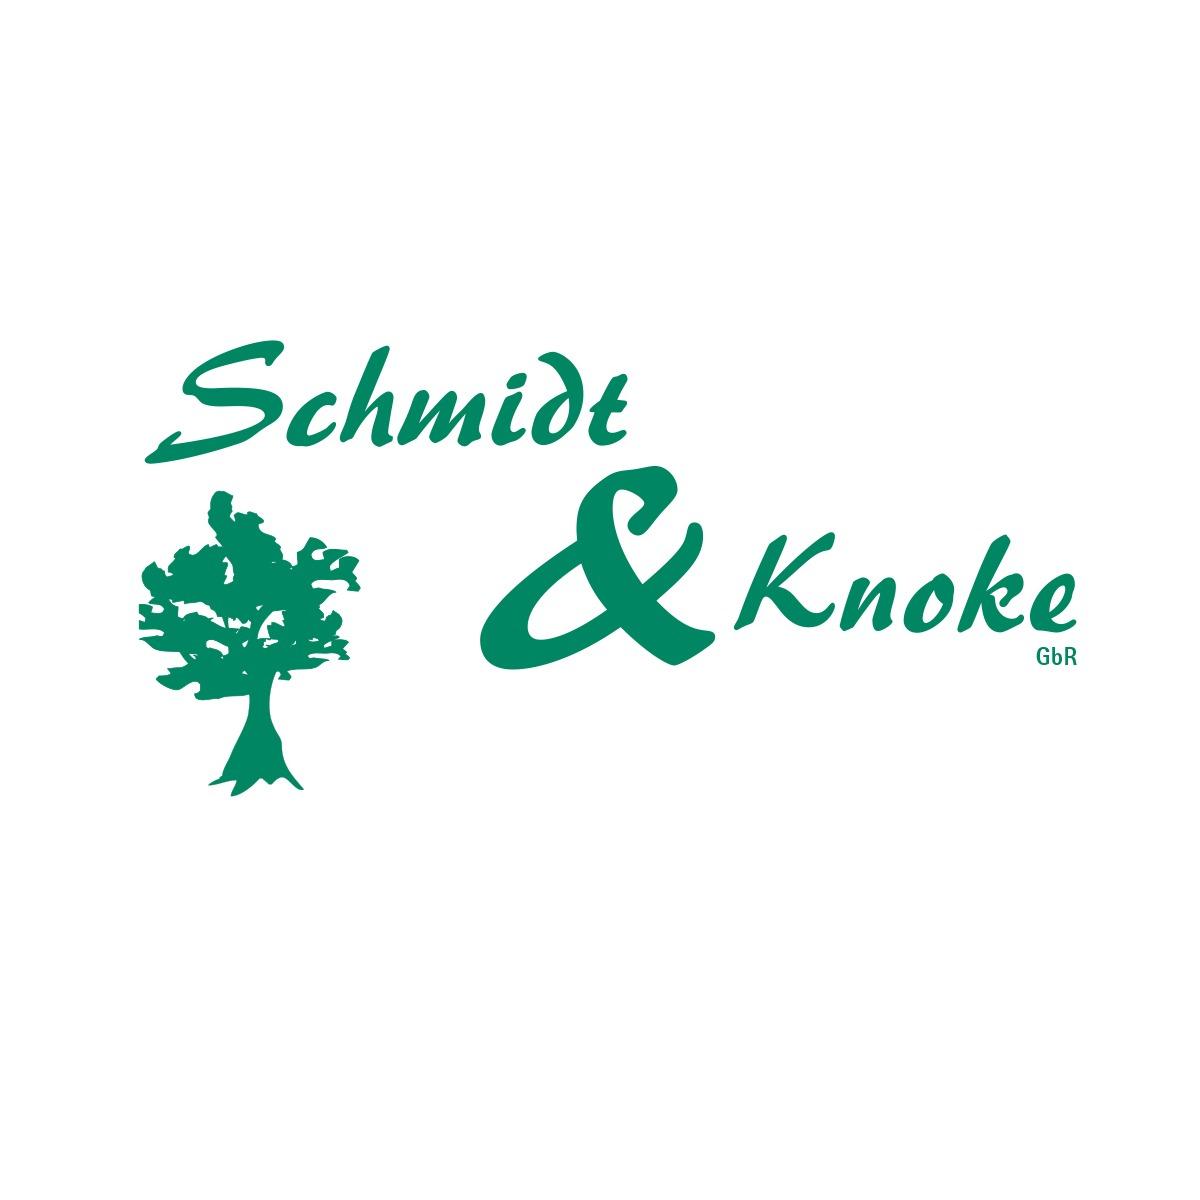 Schmidt & Knoke GbR Siegburg - Gartenpflege | Landschaftsbau | Pflasterarbeiten | Teichbau Logo